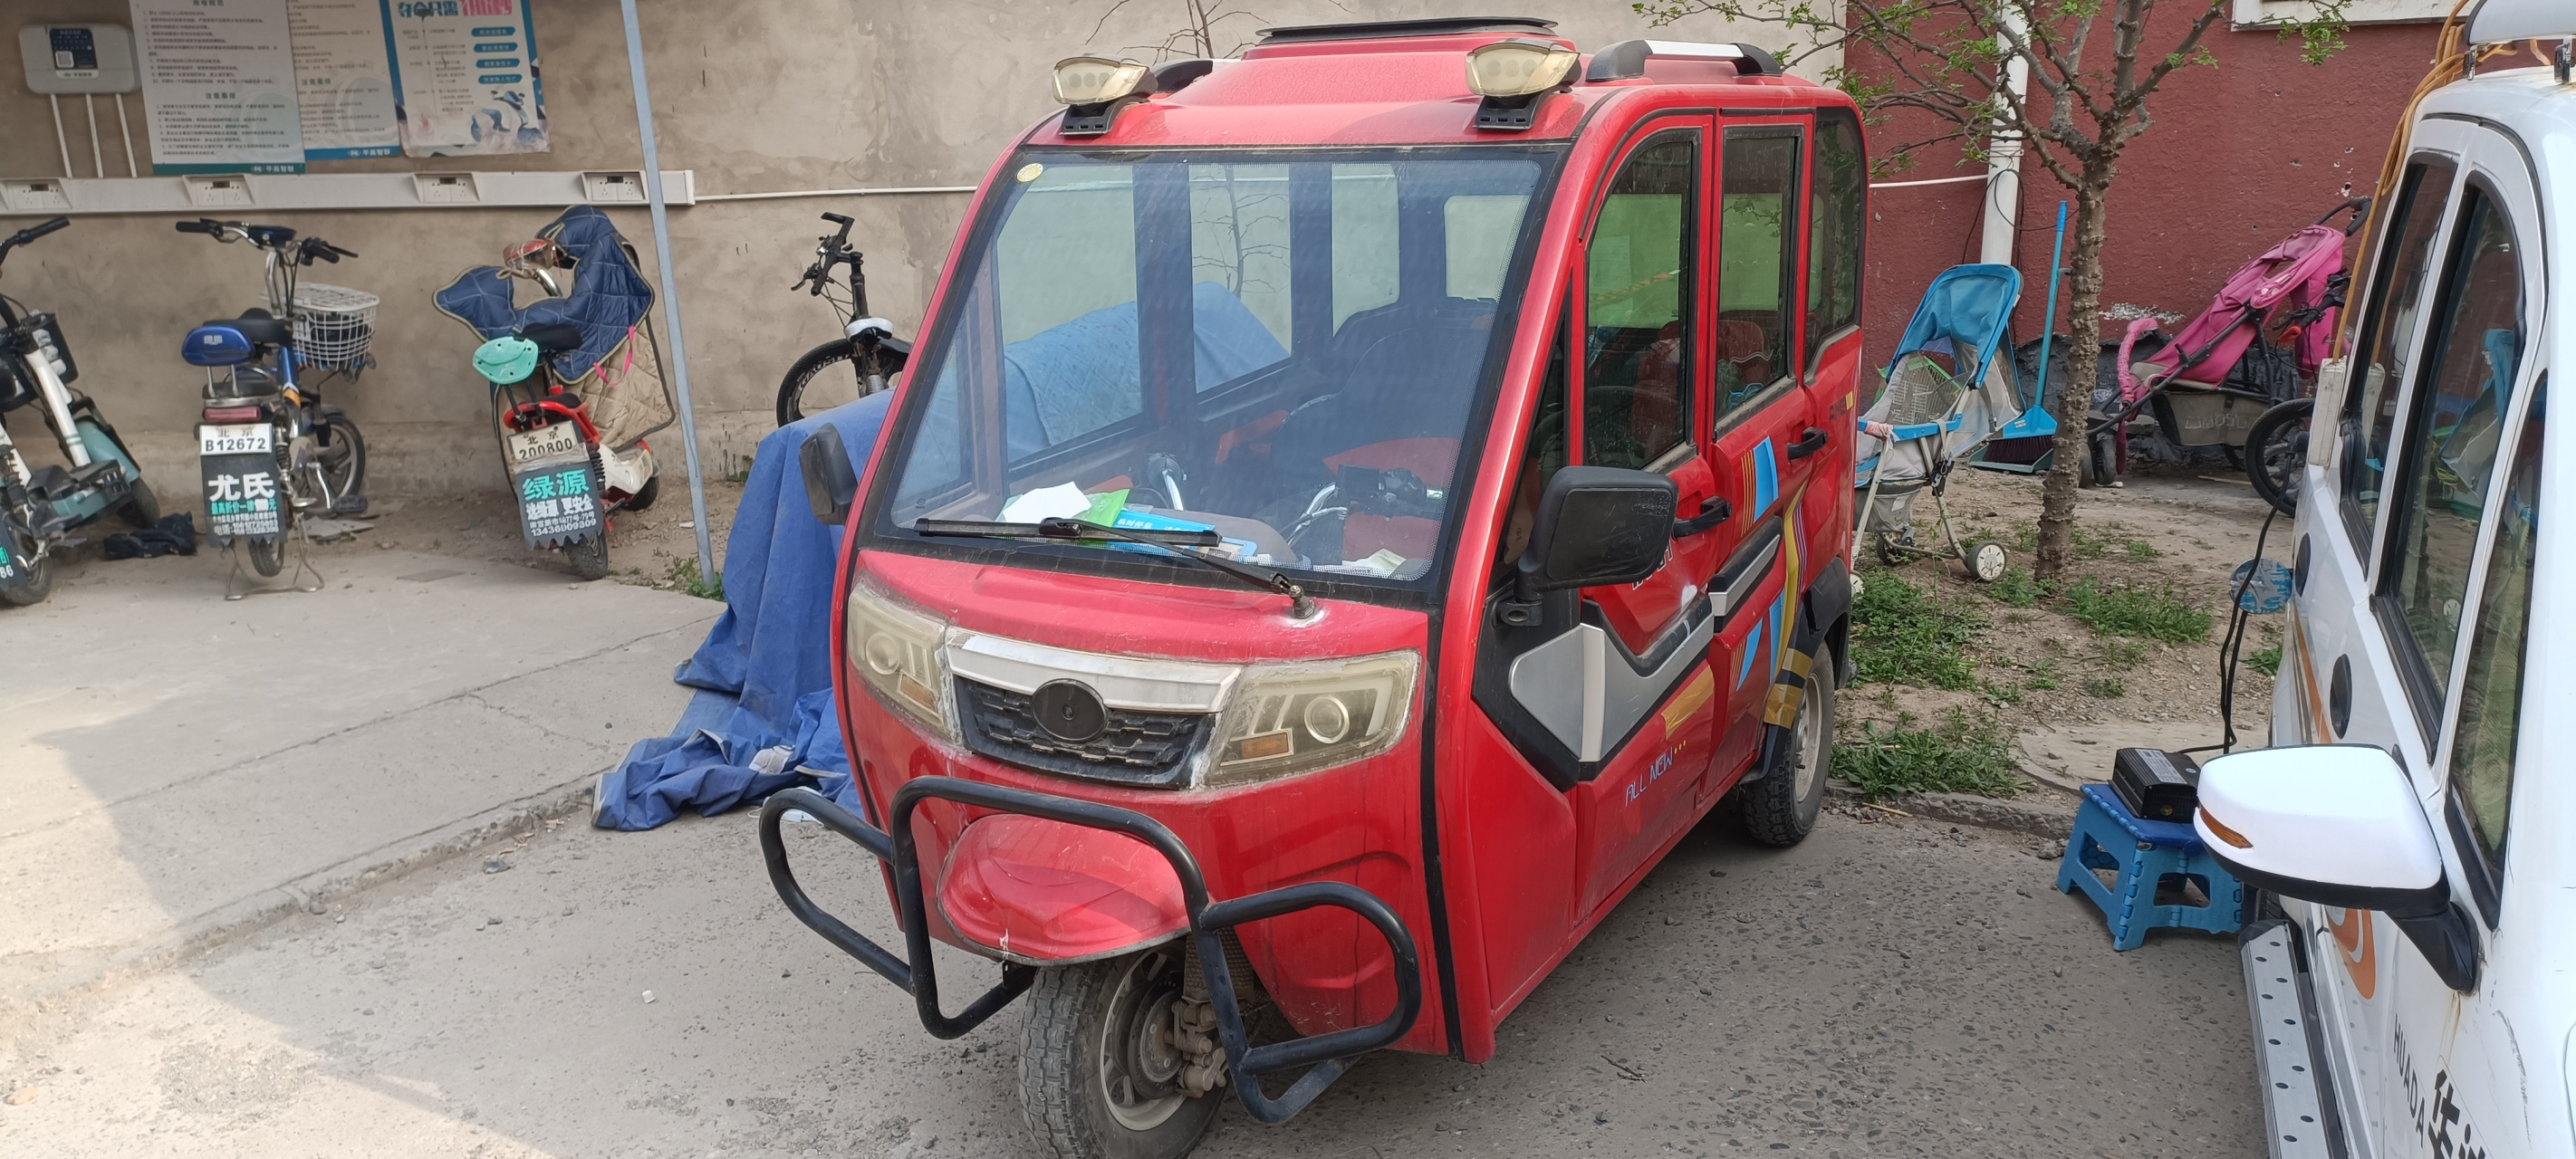 但是现在北京这边已经开始销售合规电动三轮车车了,不过电动四轮车没